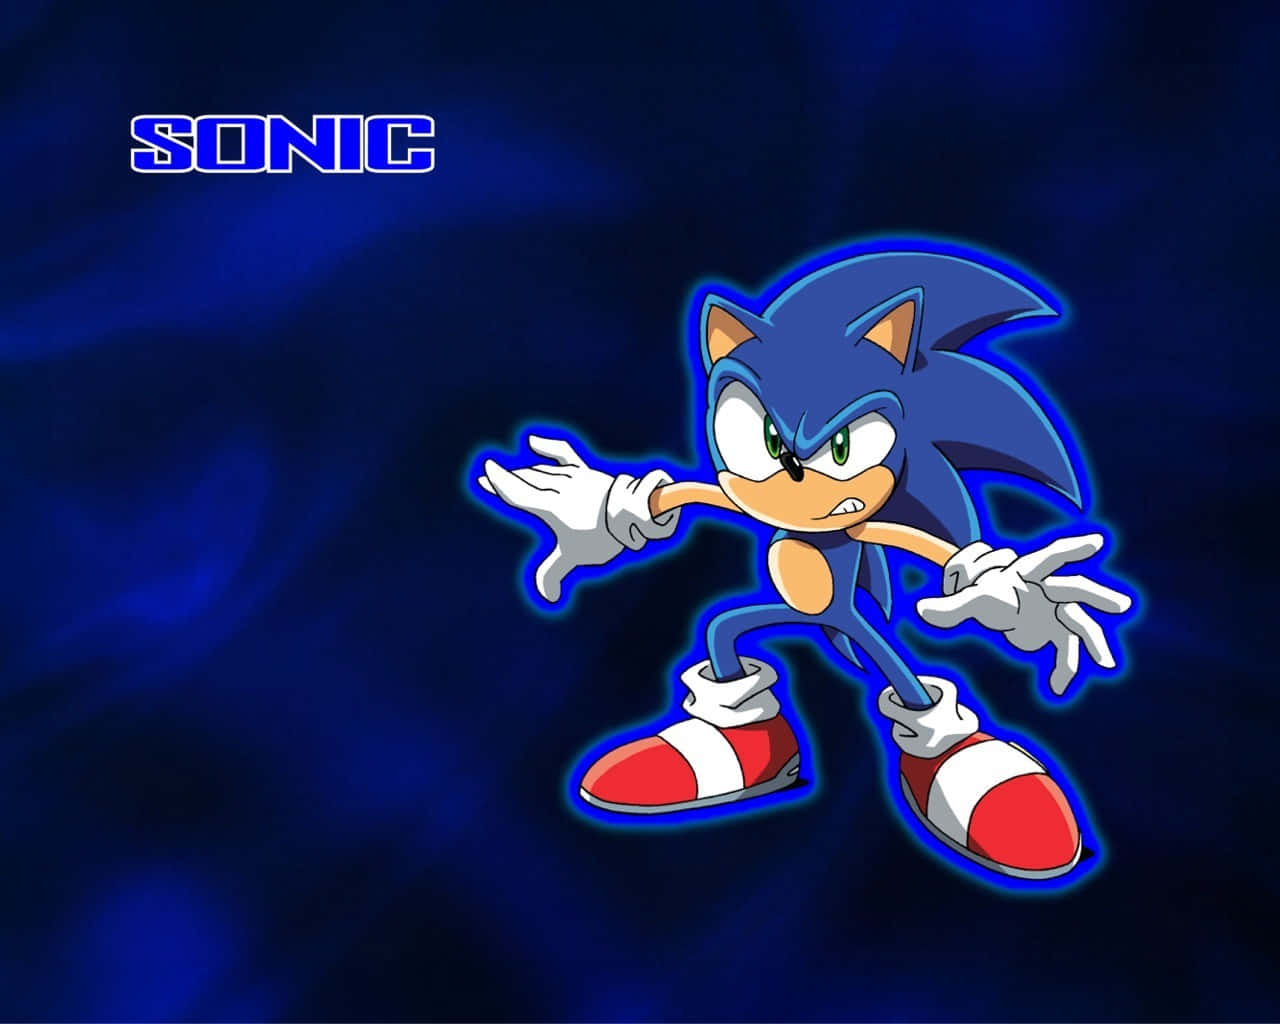 Download Sonic the Hedgehog: A Speedy Adventure in Fan Art Wallpaper